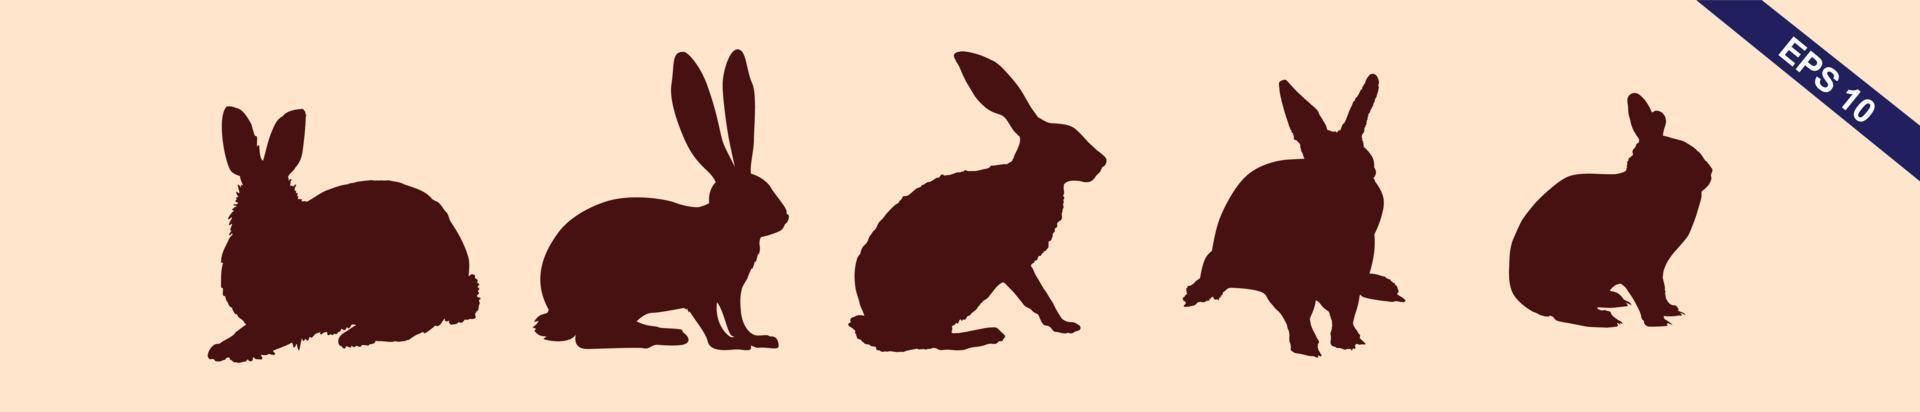 Silhouetten von Osterhasen isoliert auf hellbraunem Hintergrund. satz verschiedener kaninchensilhouetten für designzwecke. vektor